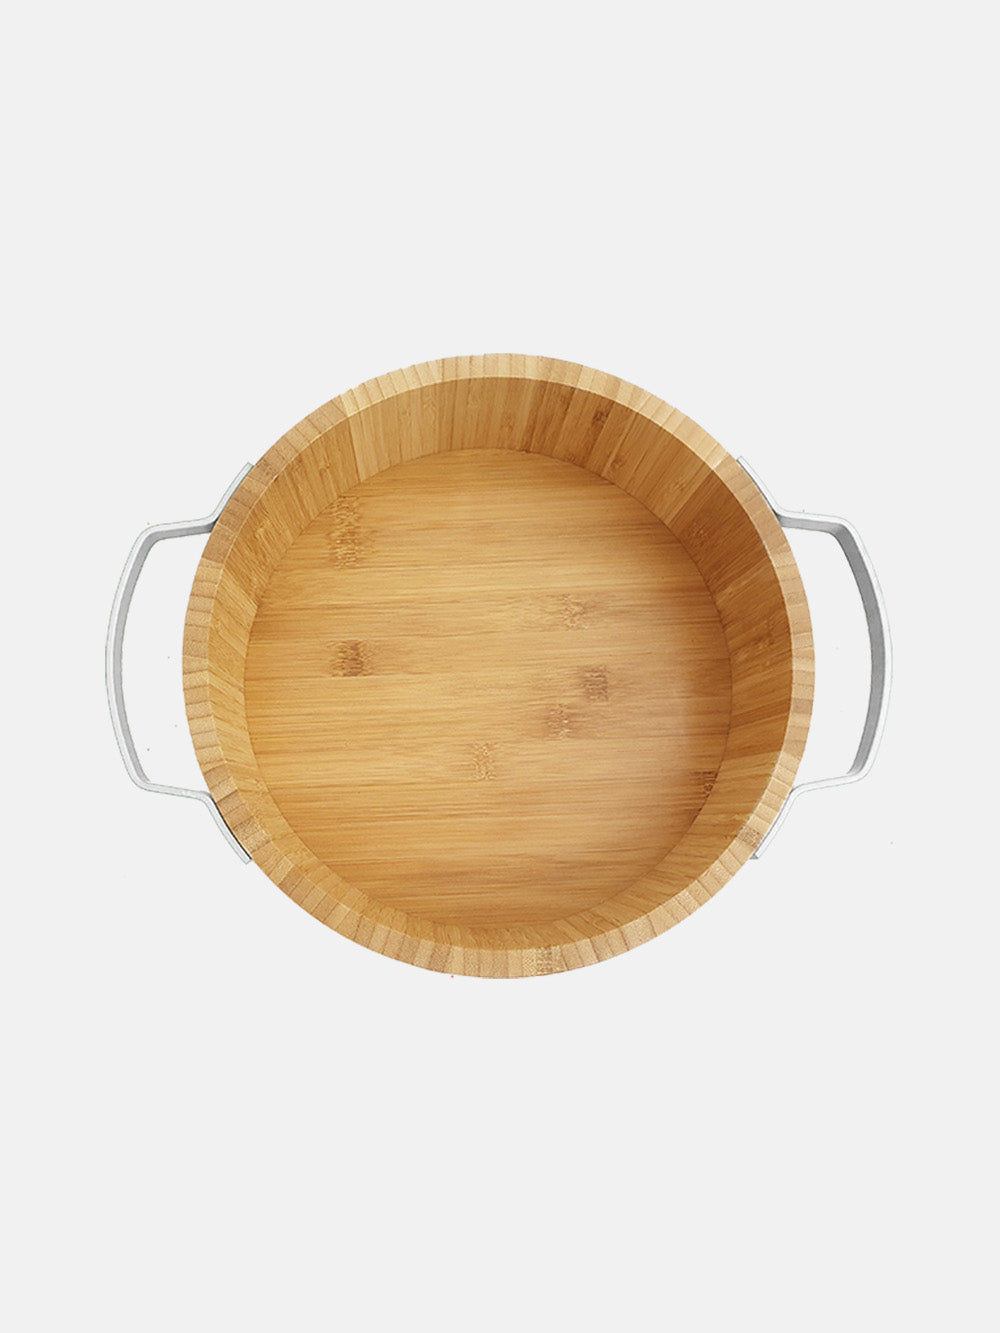 Kav wooden serving bowl